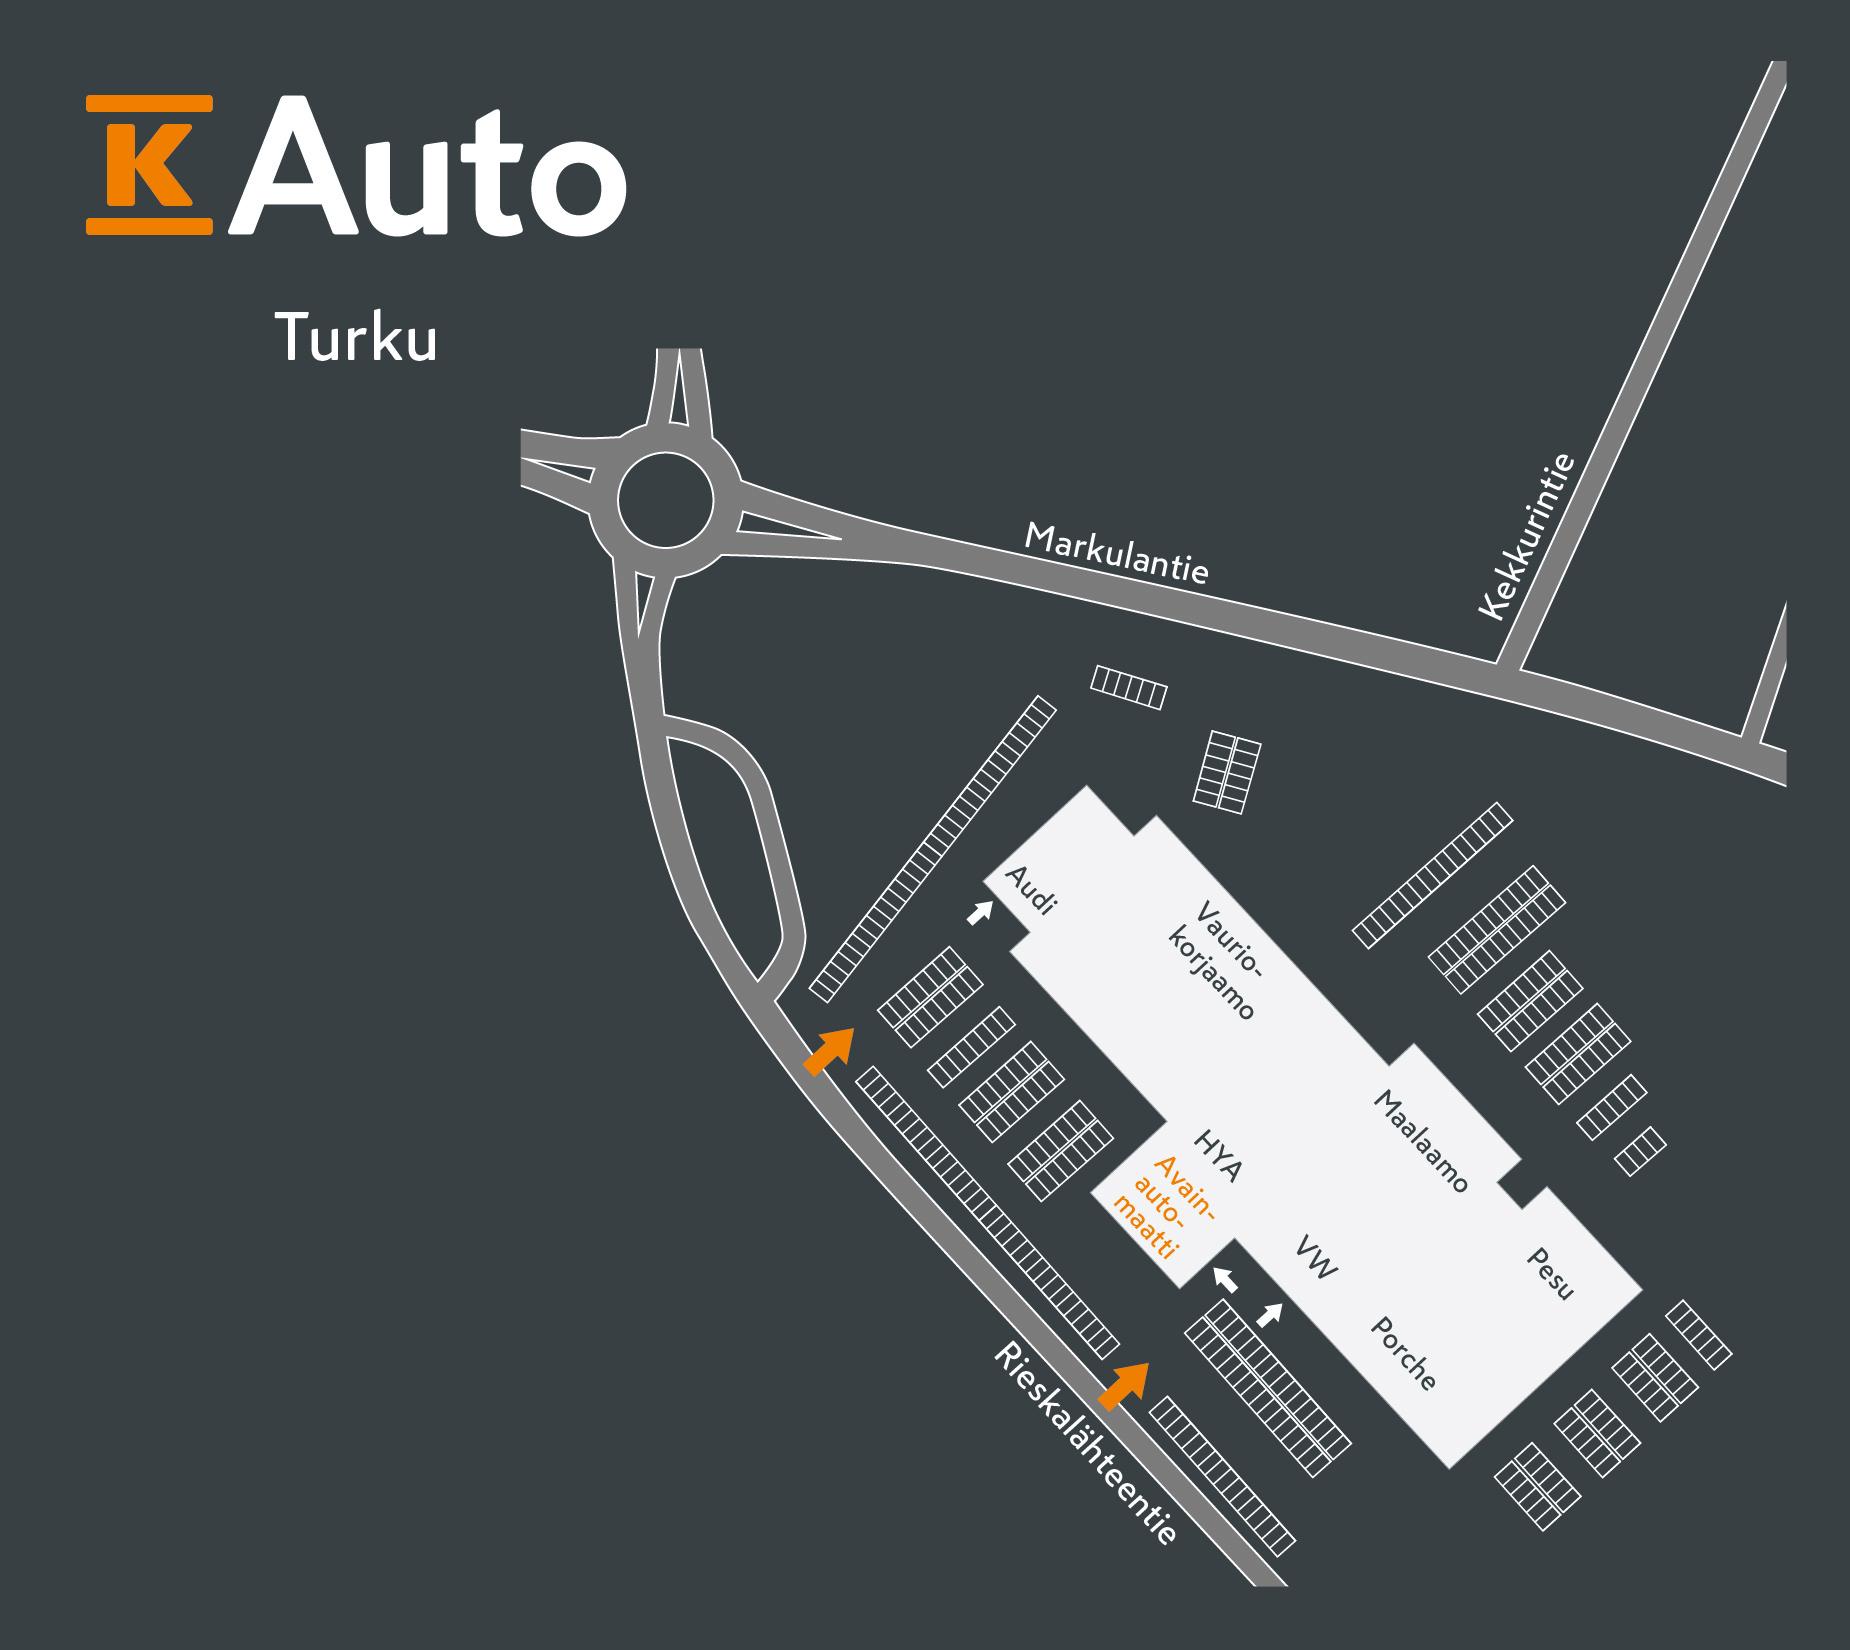 K-Auto Turku - Avainautomaatti kartta